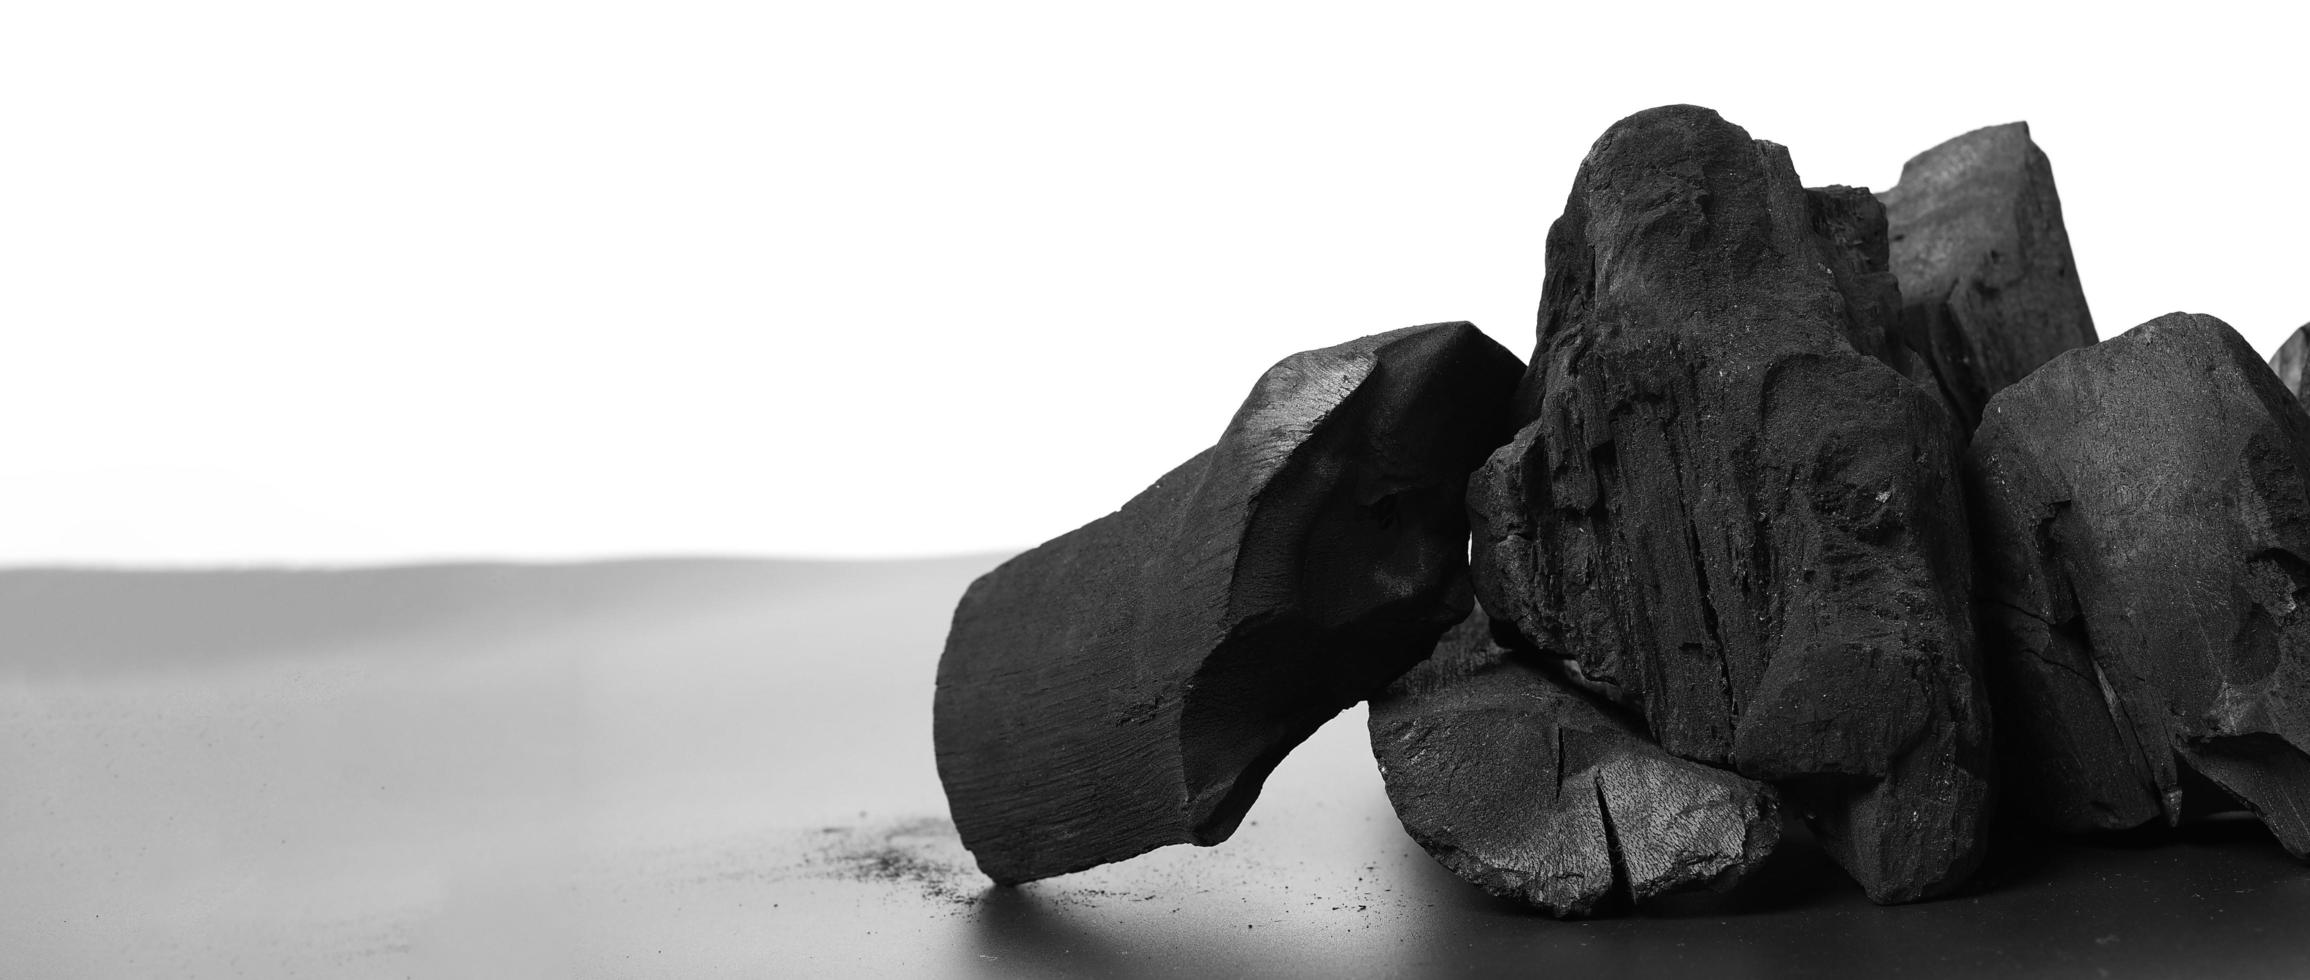 carbone di legna. carbone nero su pavimento strutturato nero. usato per cucinare foto